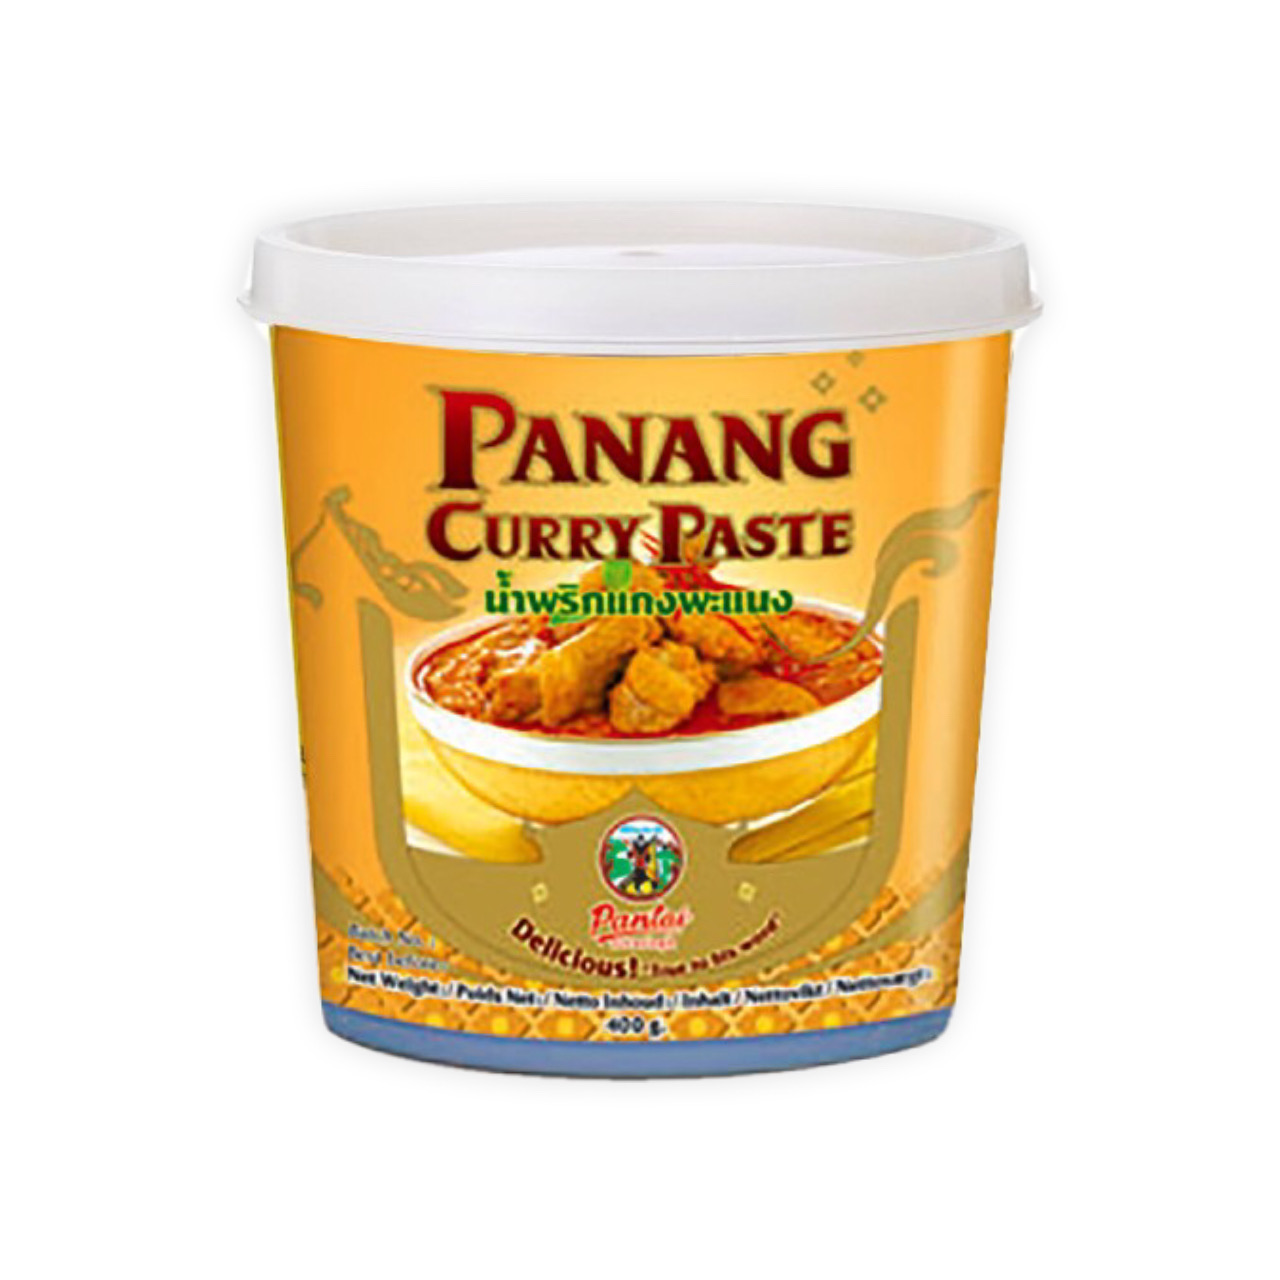 رب کاری پانانگ ( کاری پیست ) ۴۰۰ گرم پنتای – Panang curry paste pantai